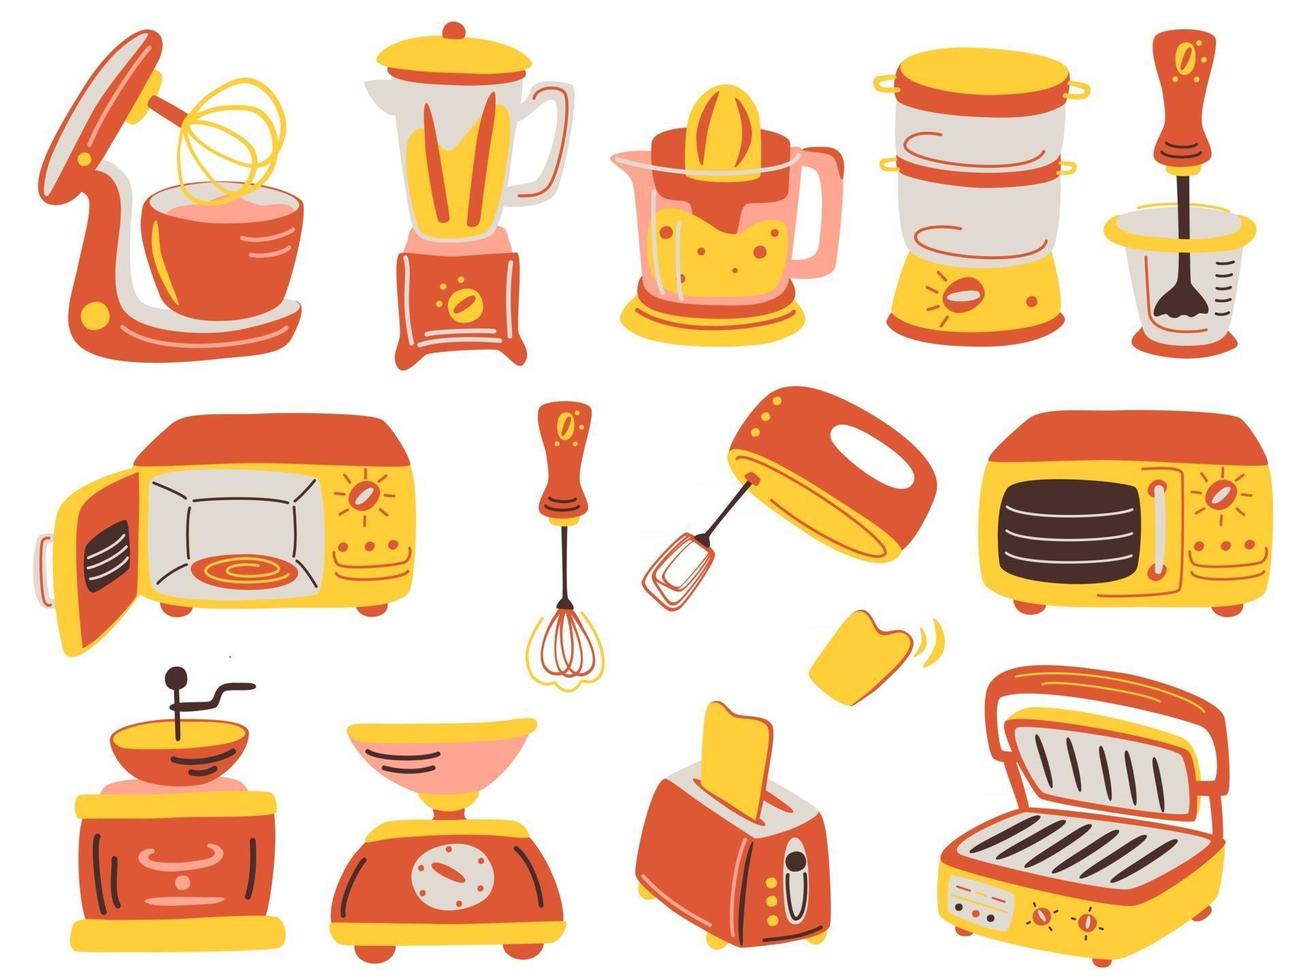 cartoon keukenapparatuur set. fruitpers, grill, blender, elektronische weegschaal, koffiemolen, broodrooster, blender, magnetron, mixer met keukenrobot. vector